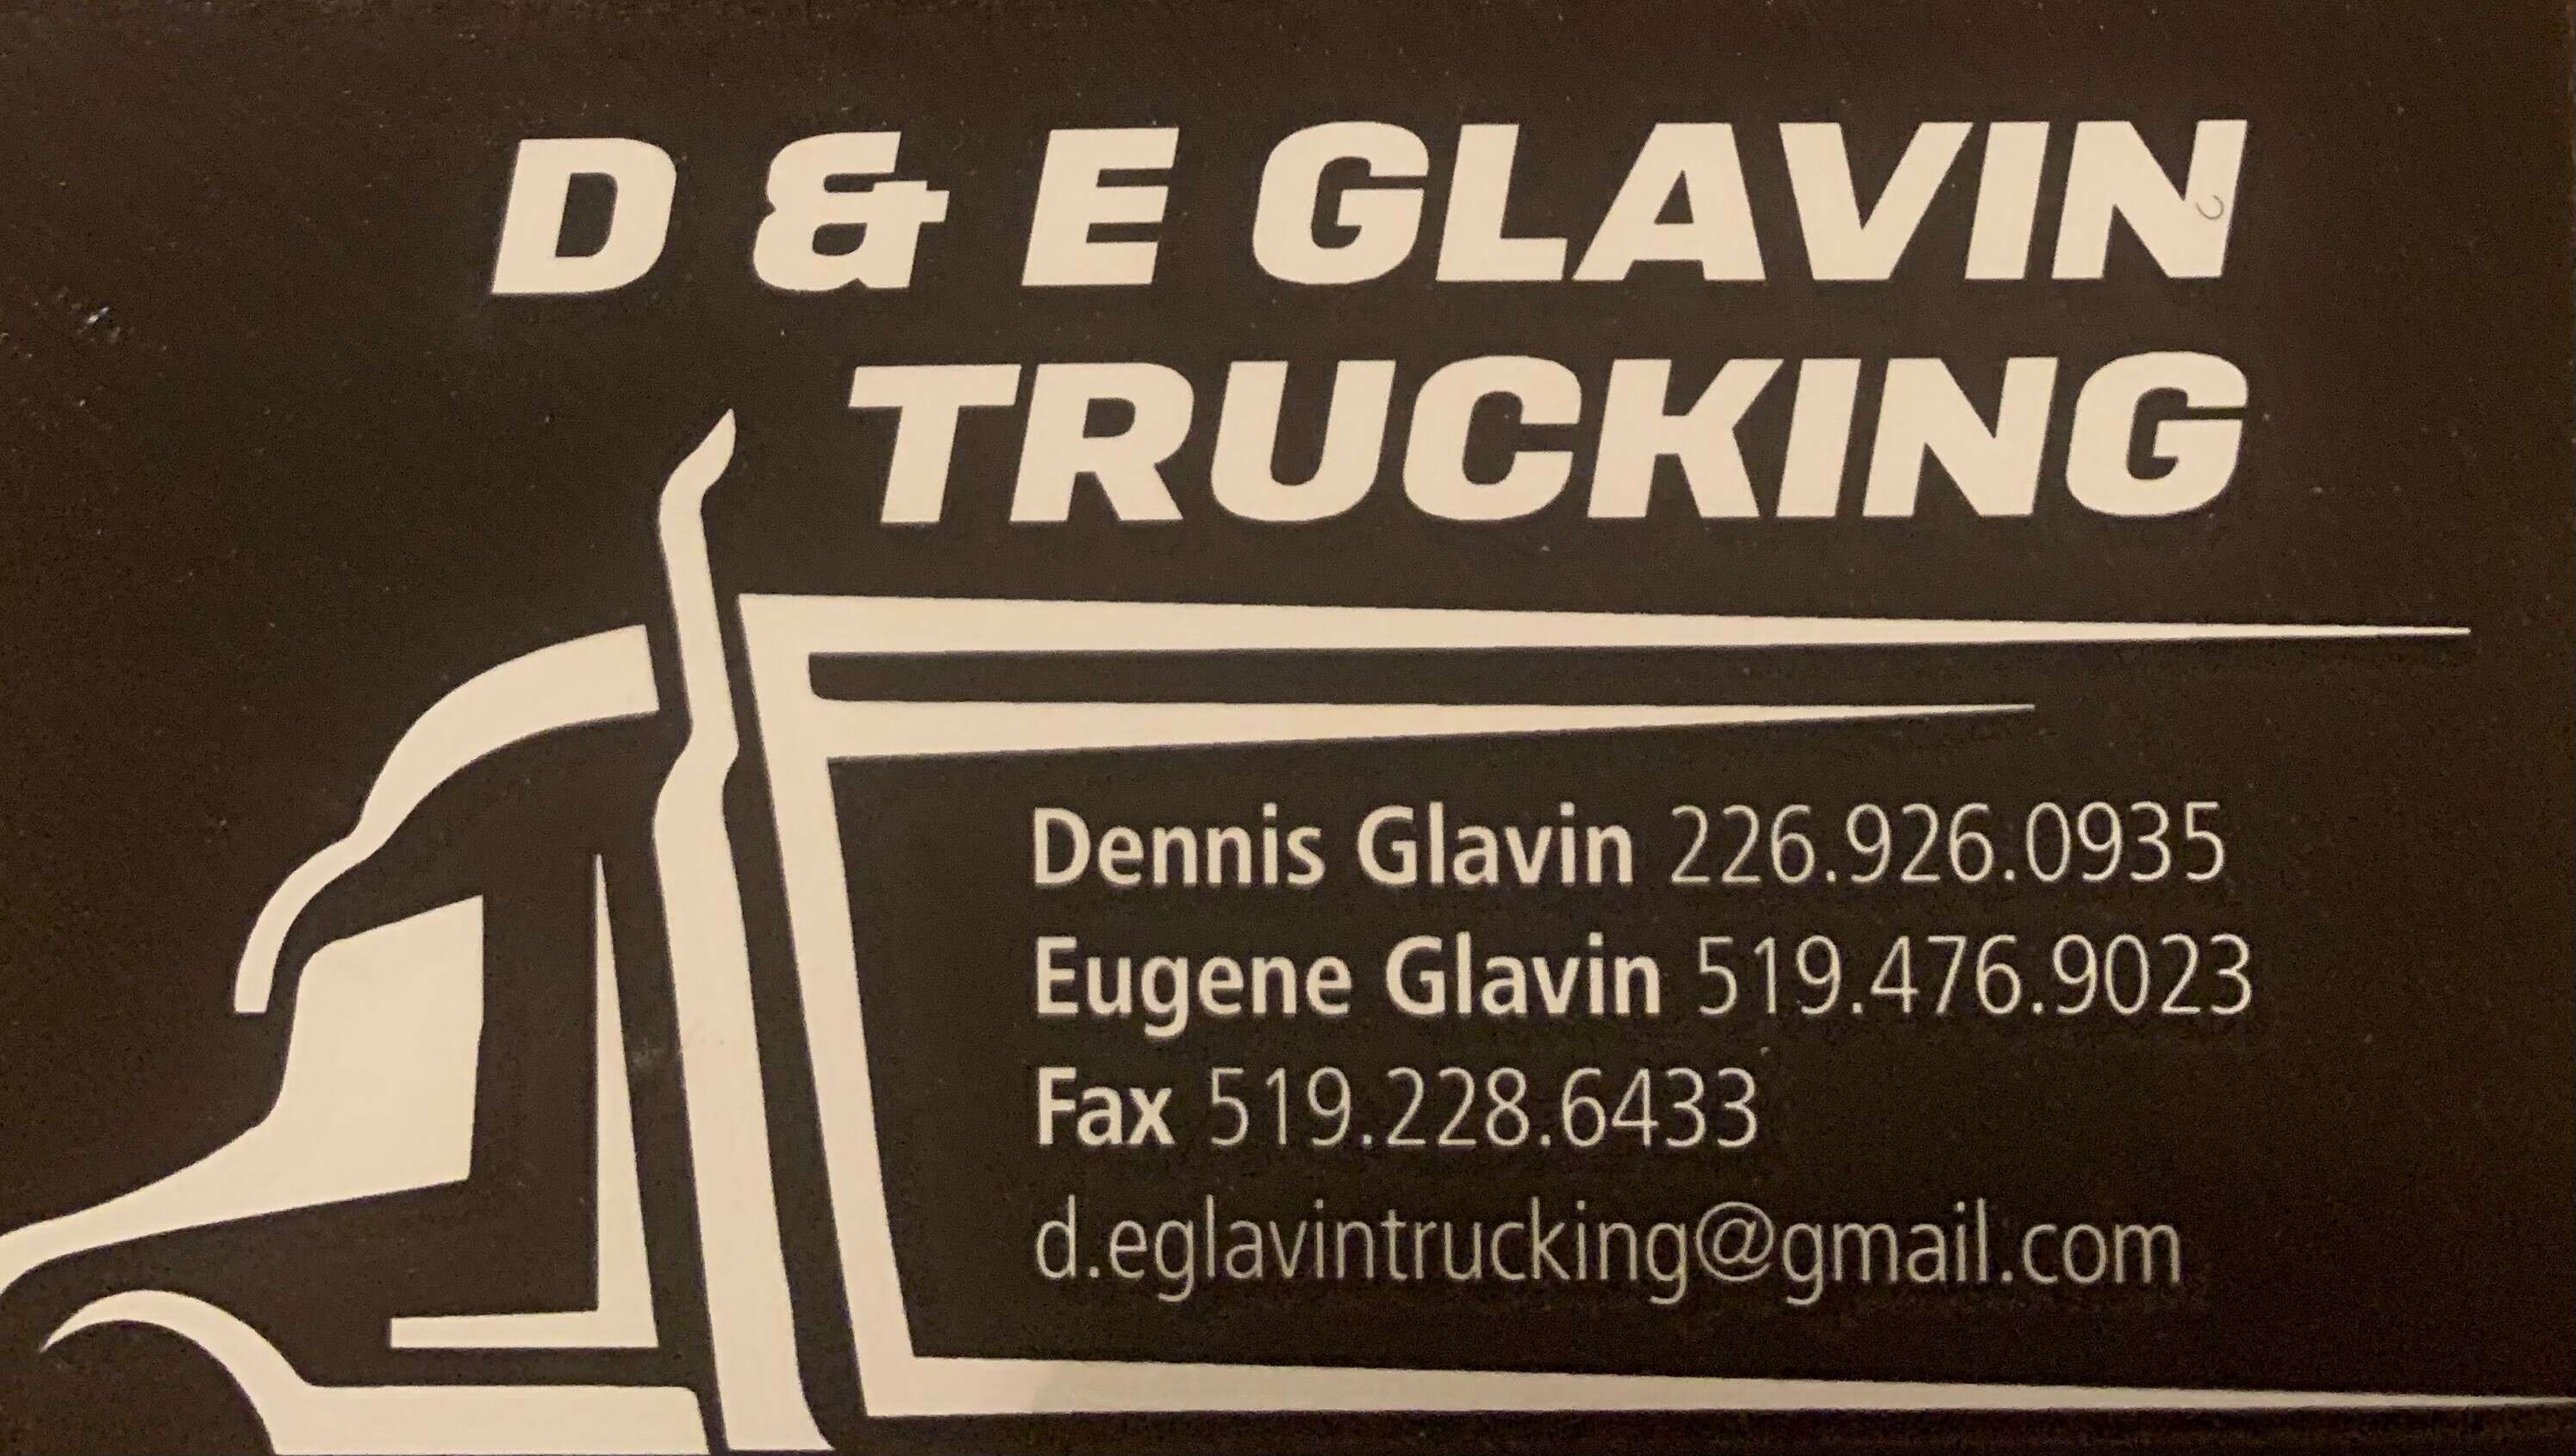 D & E Glavin Trucking